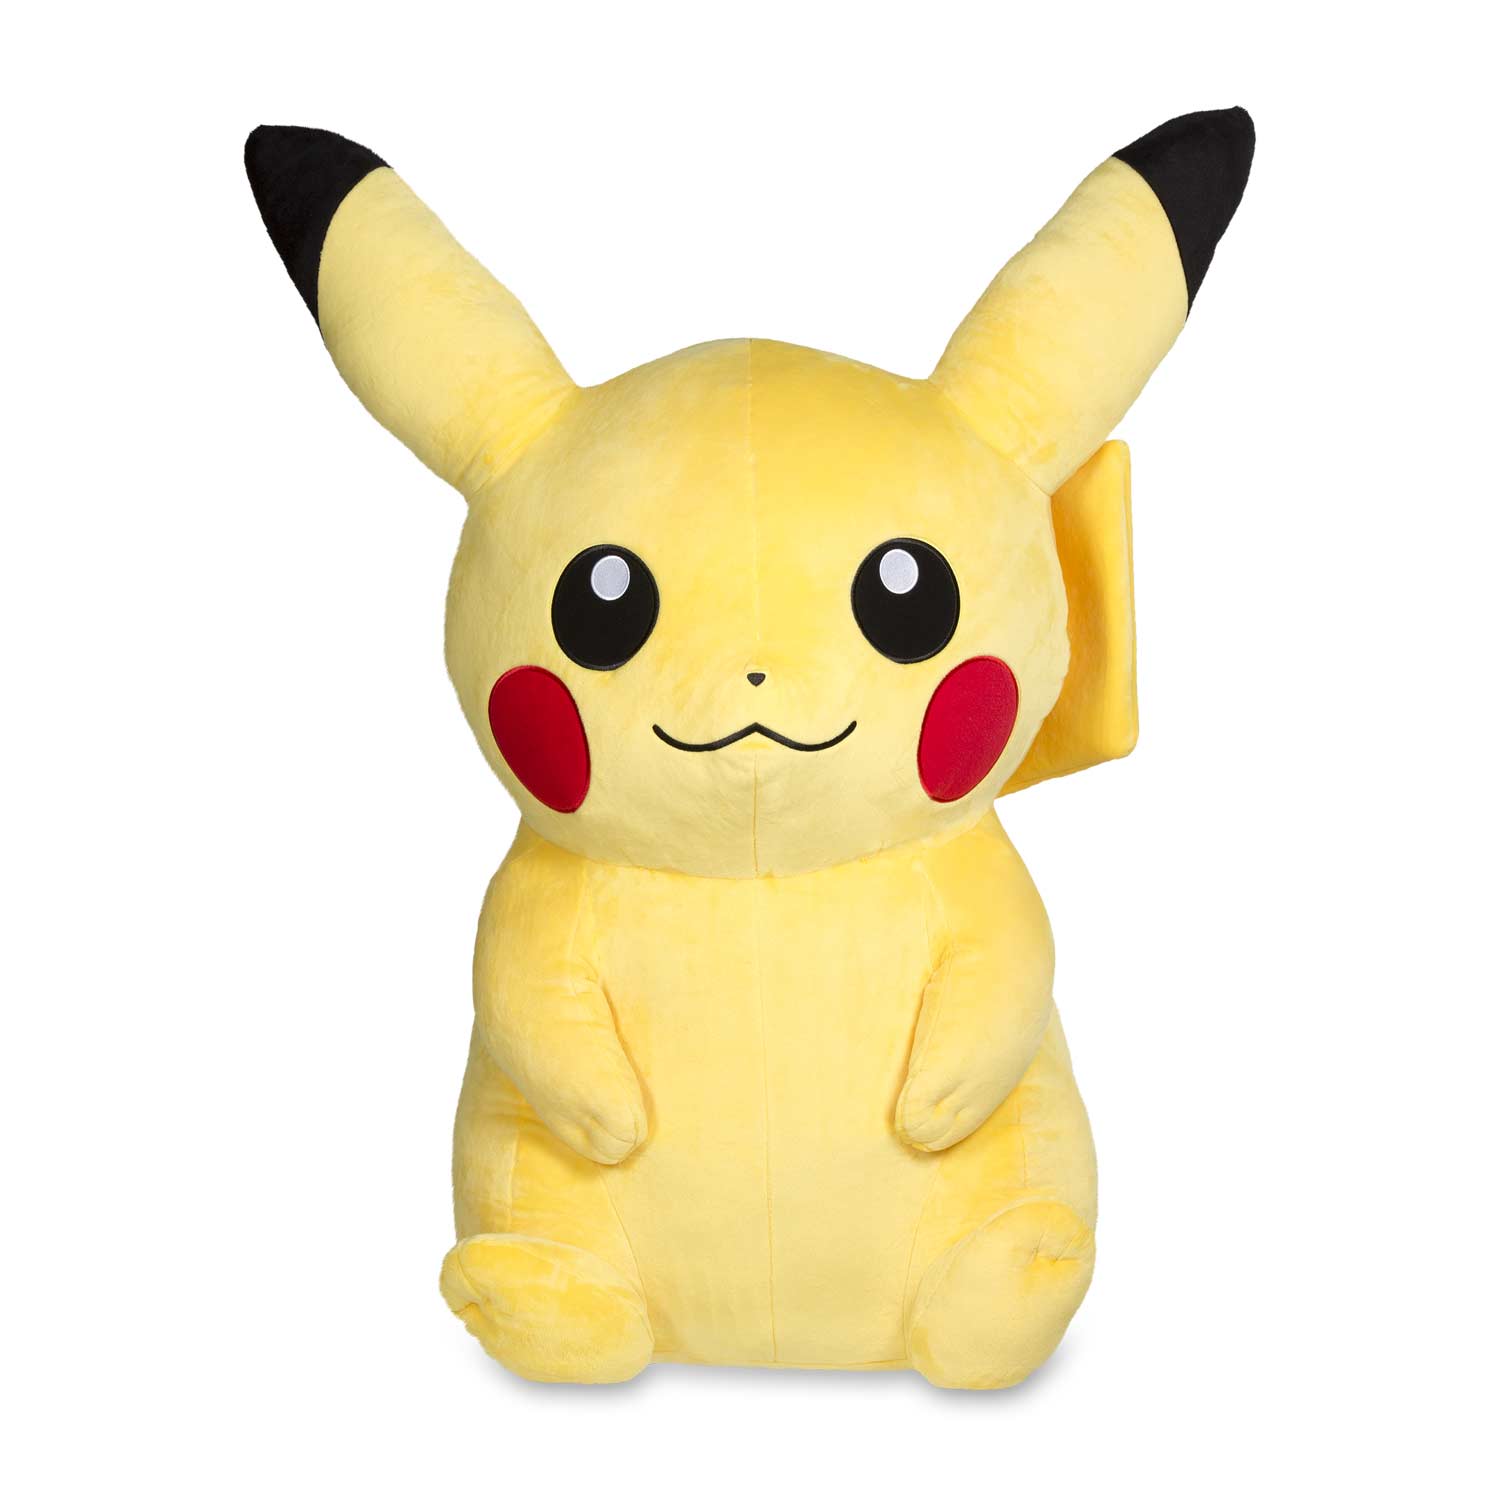 pikachu stuffed animal large